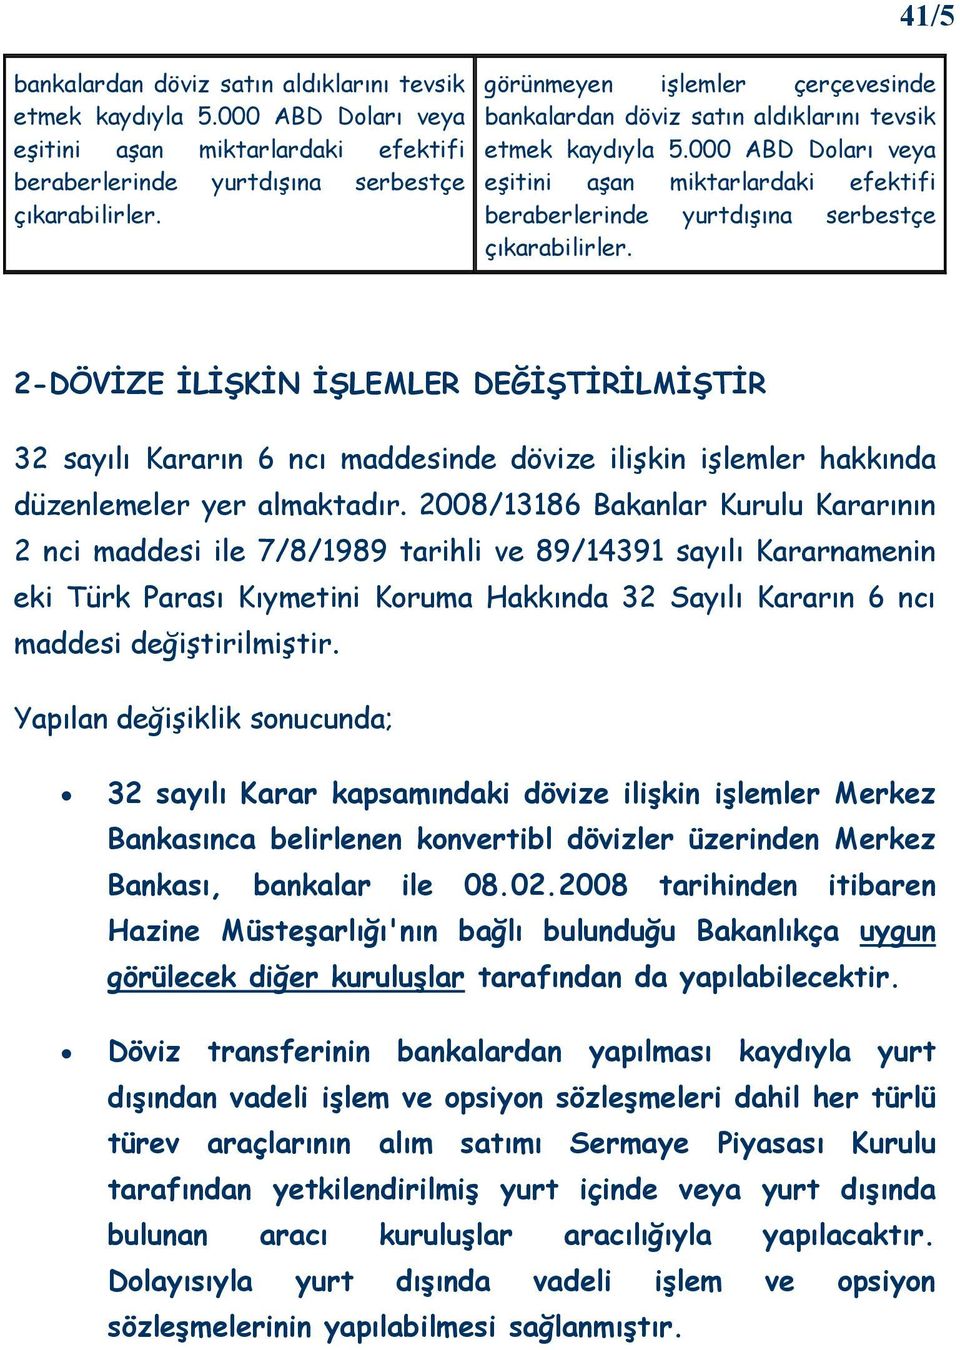 2008/13186 Bakanlar Kurulu Kararının 2 nci maddesi ile 7/8/1989 tarihli ve 89/14391 sayılı Kararnamenin eki Türk Parası Kıymetini Koruma Hakkında 32 Sayılı Kararın 6 ncı maddesi değiştirilmiştir.